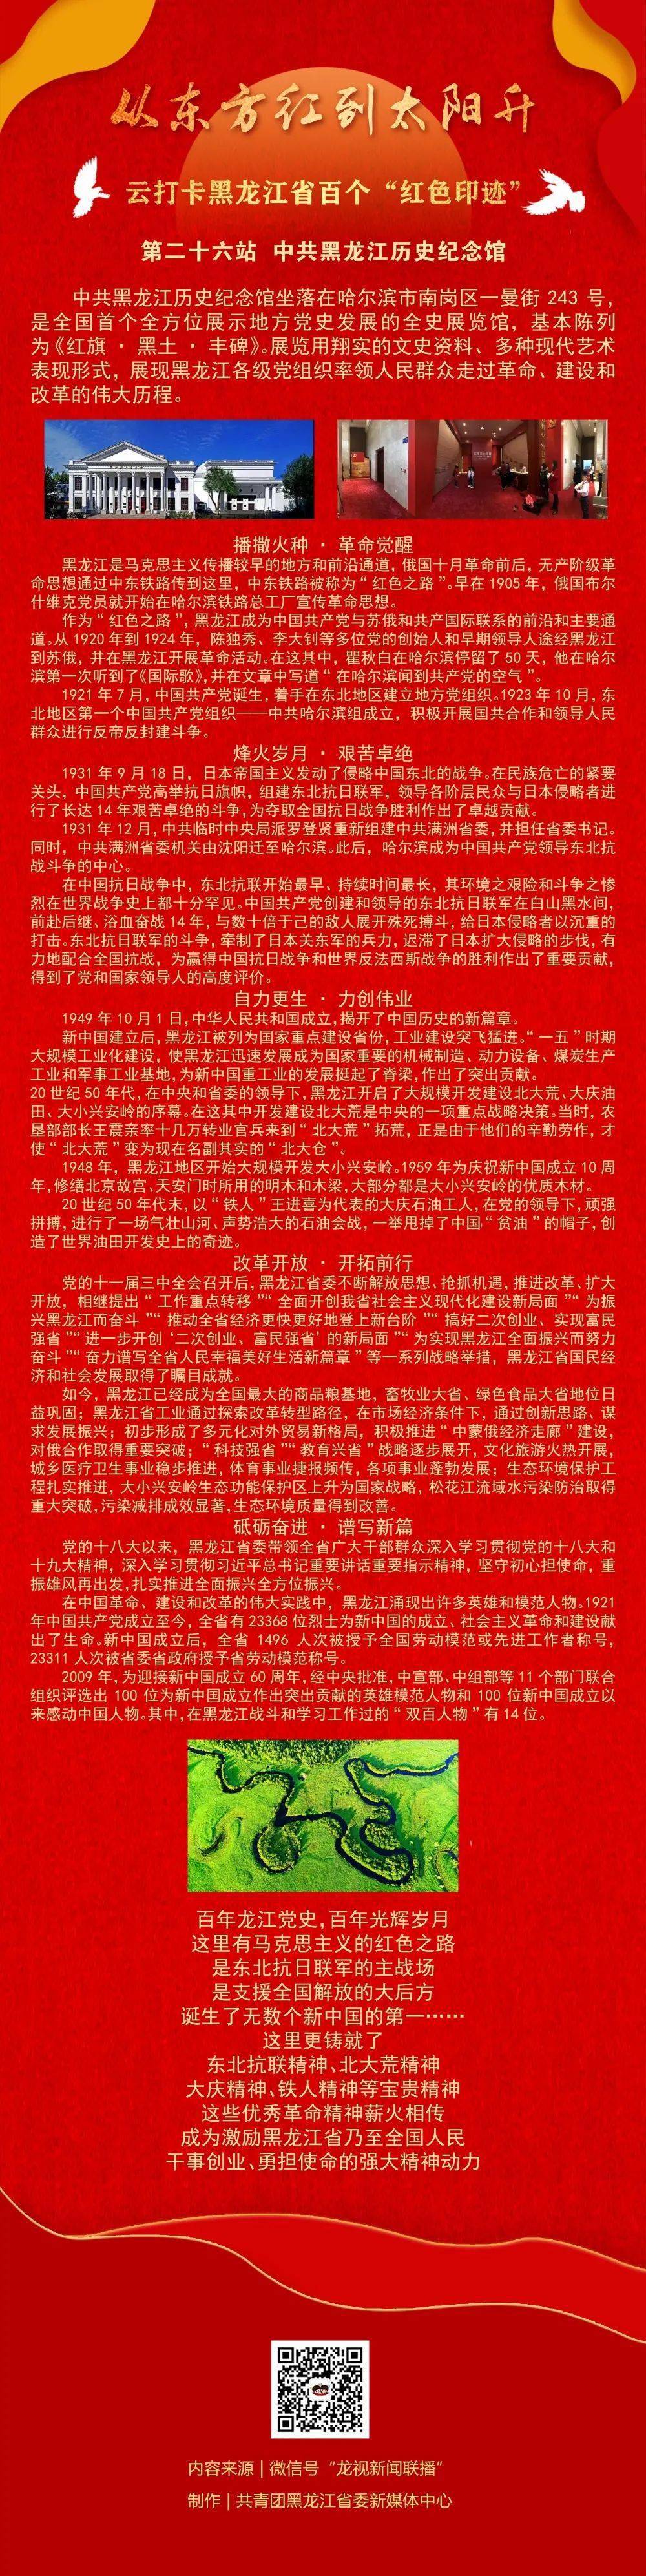 张庆伟在《学习时报》发表文章:从党的百年历史中汲取